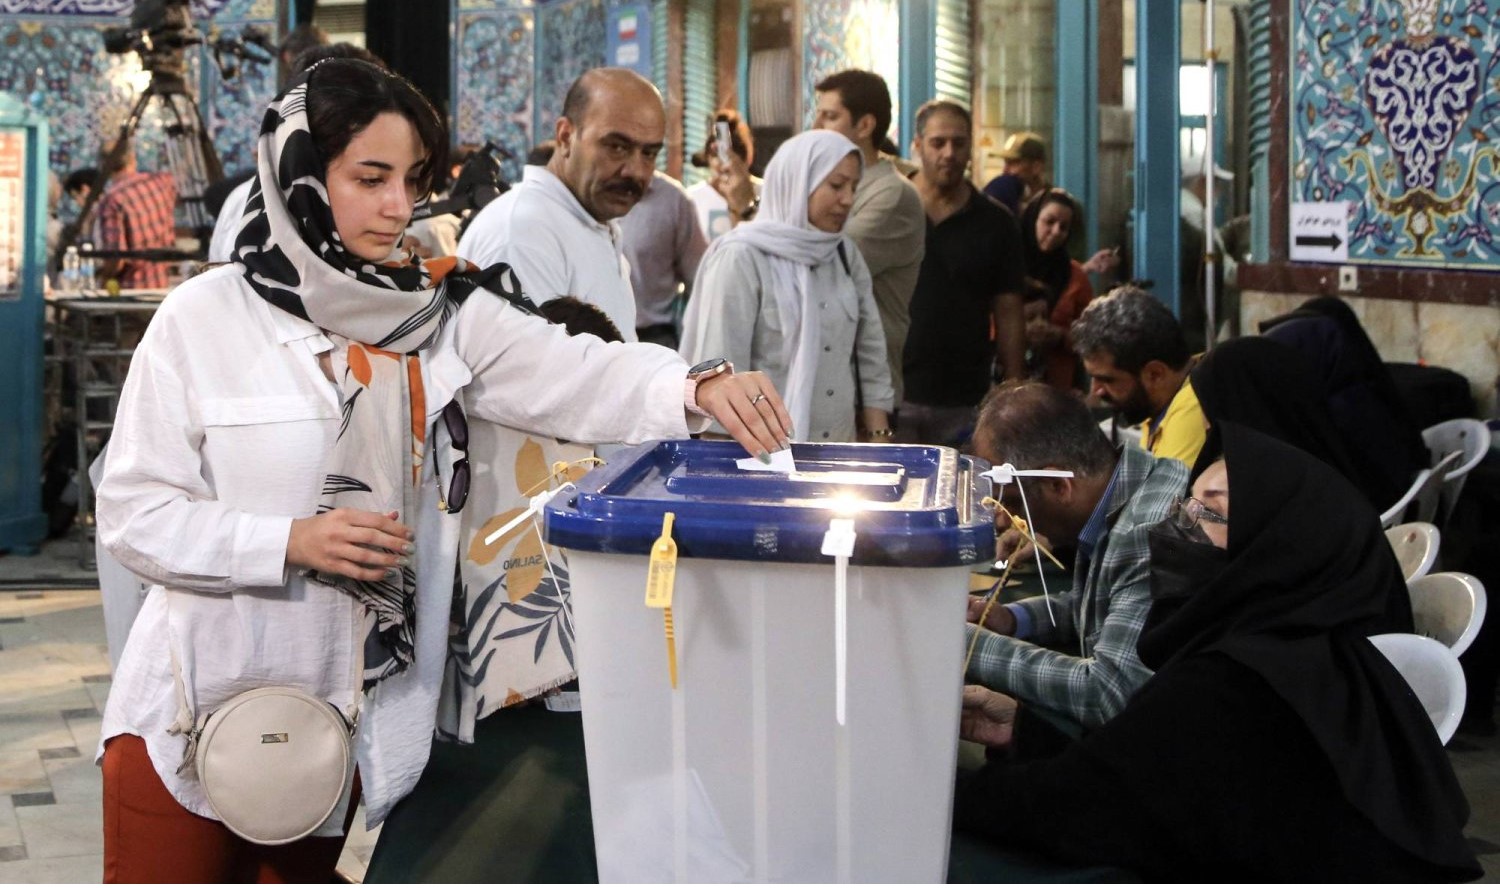 هيئة الانتخابات الإيرانية تعلن عن جولة إعادة بين بزشكيان وجليلي